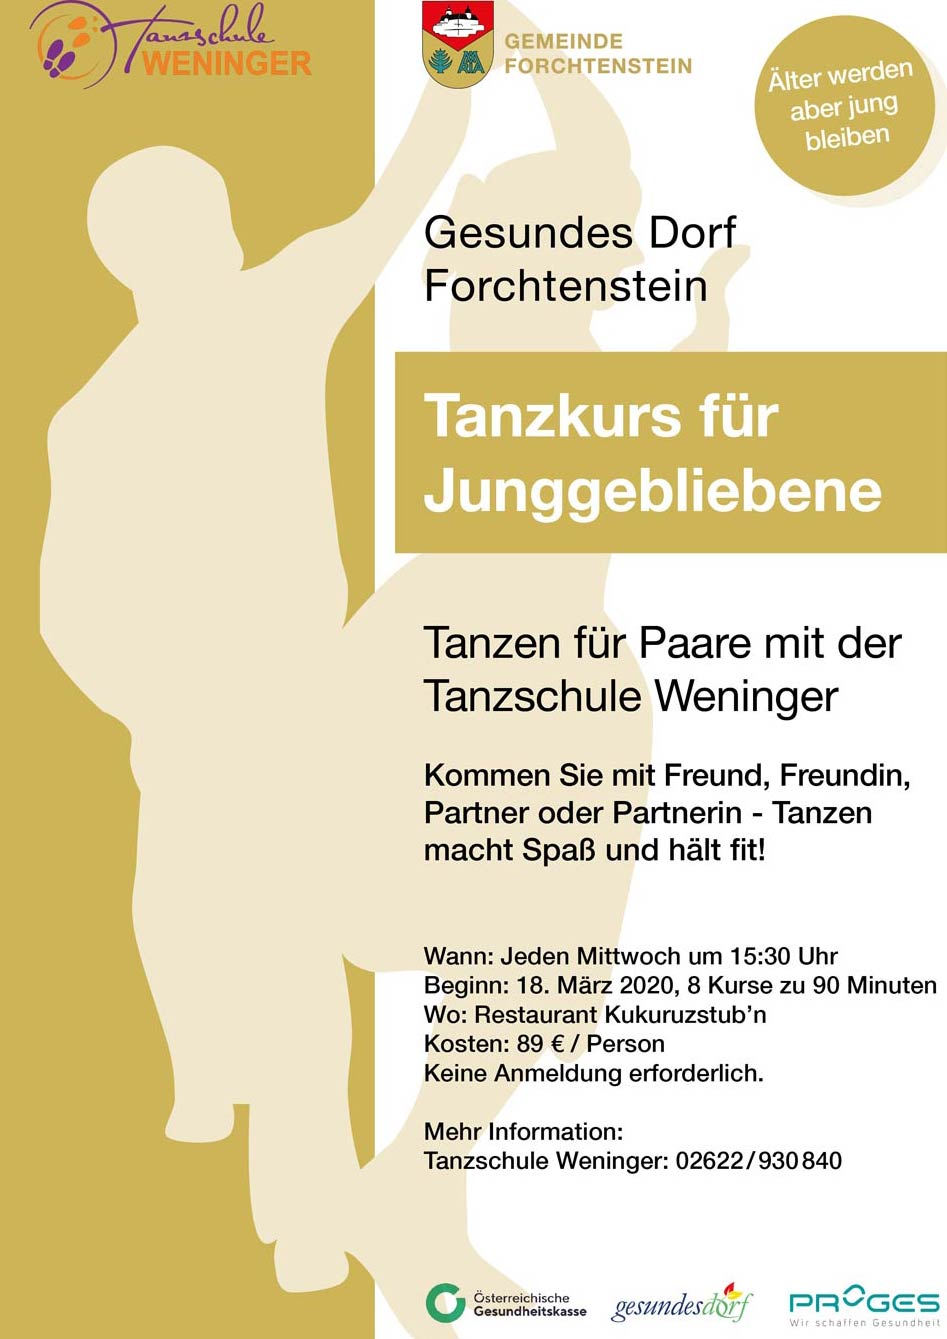 Ankündigung für Tanzkurs Forchtenstein, Tanzschule Weninger, Gesundes Dorf